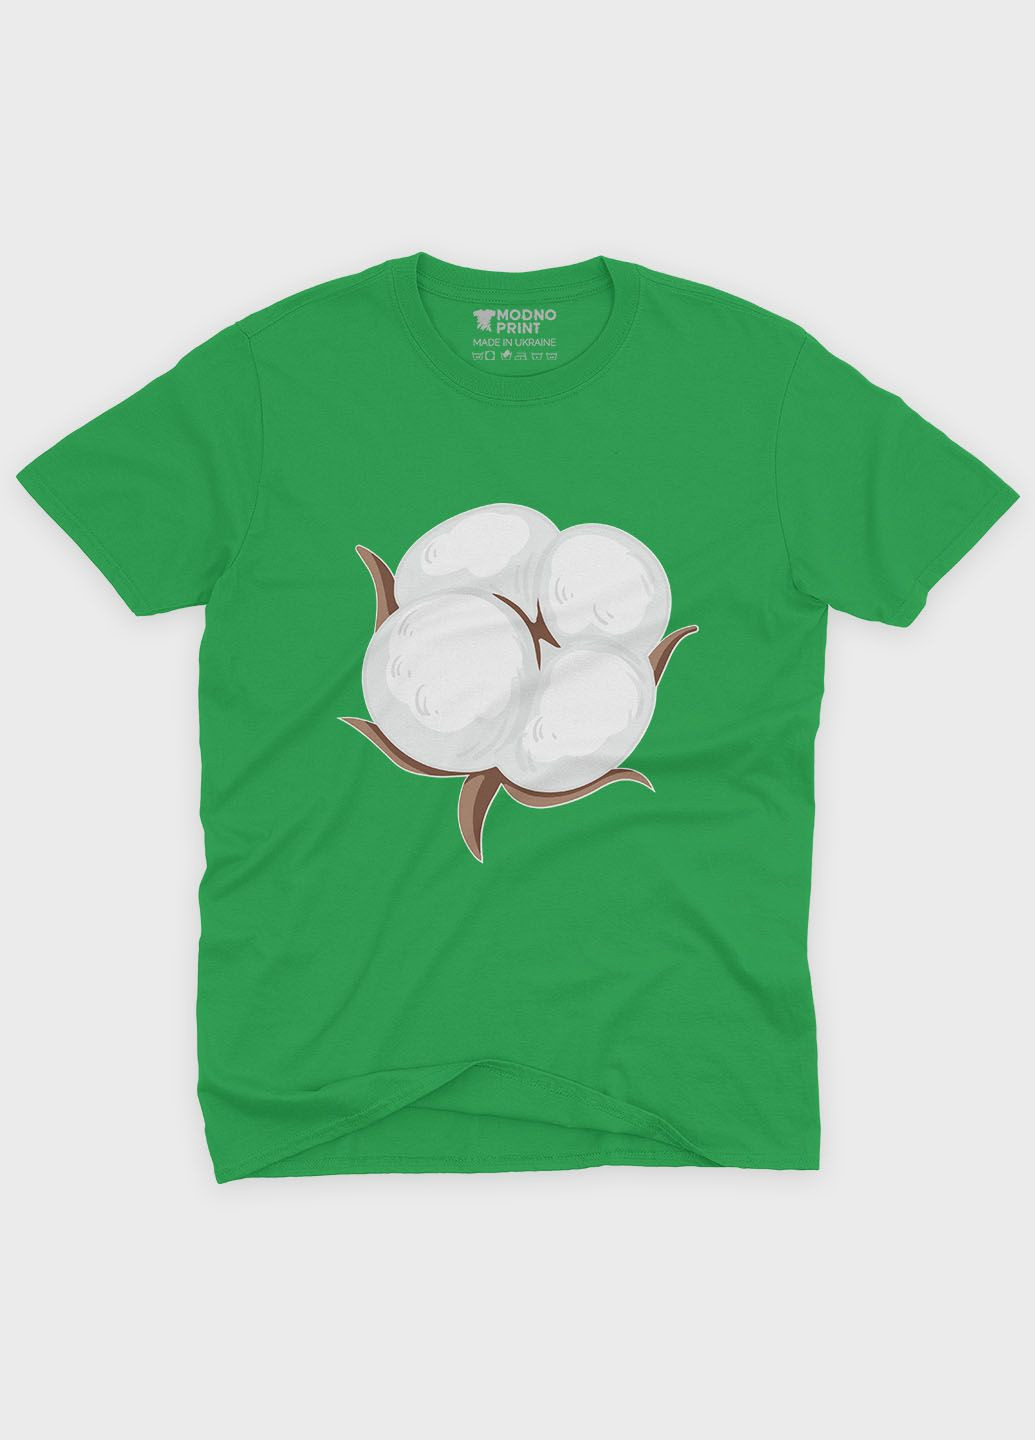 Зеленая демисезонная футболка для мальчика с патриотическим принтом хлопок (ts001-5-keg-005-1-137-b) Modno